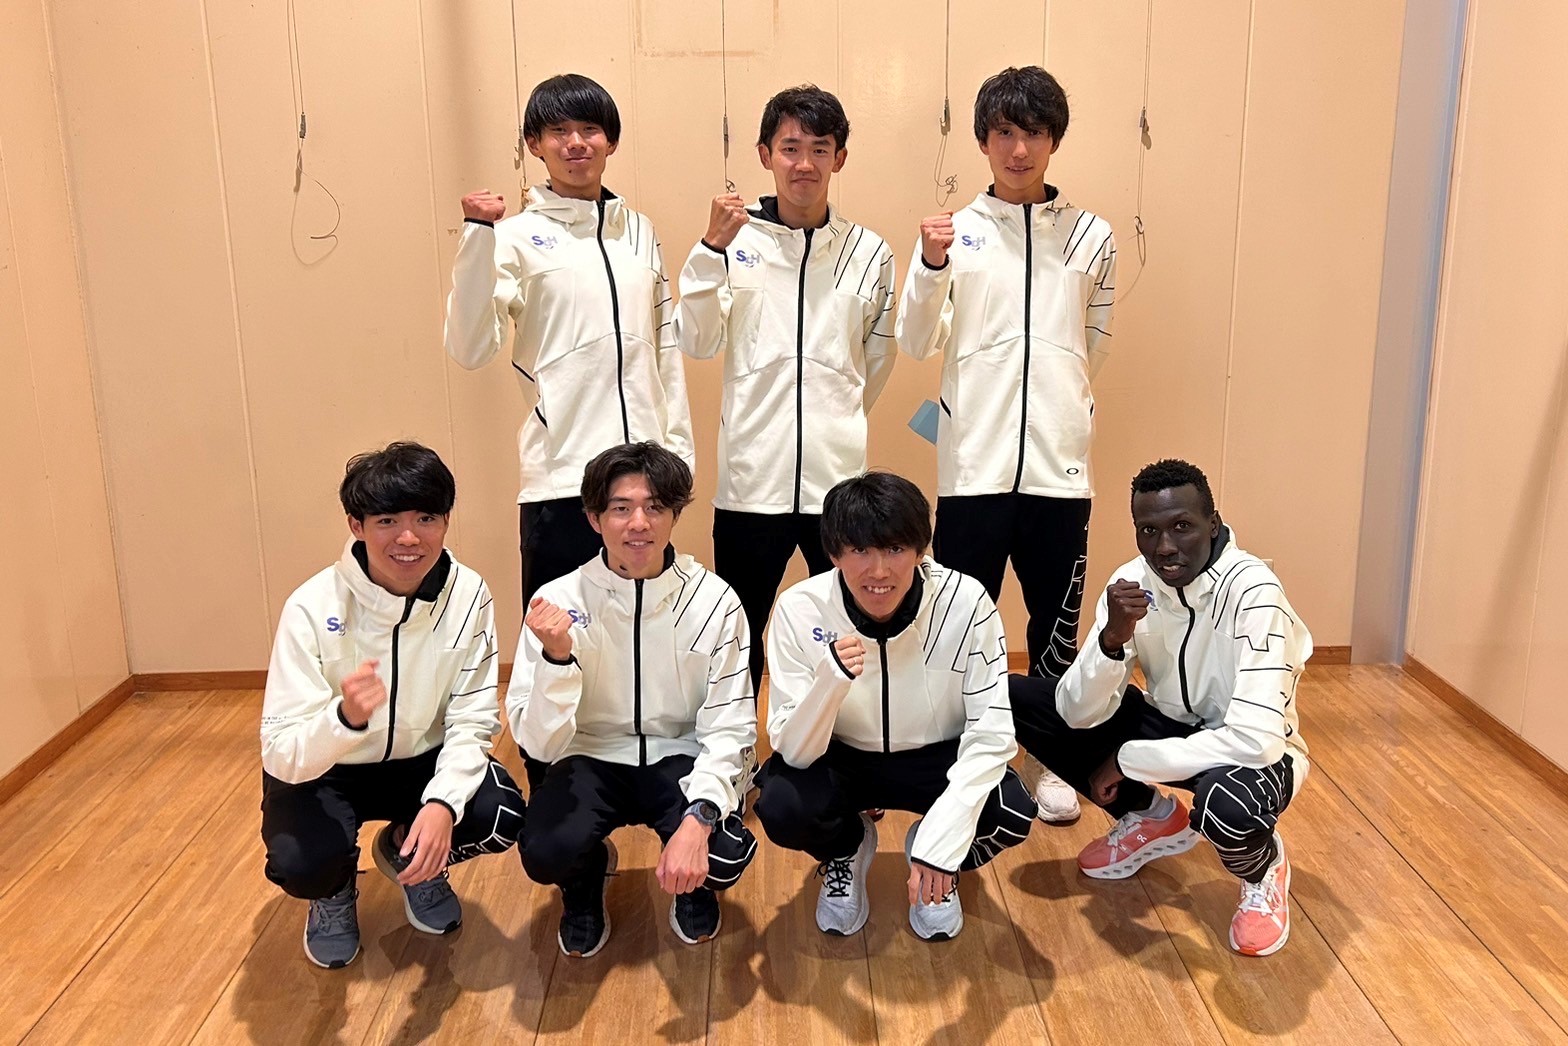 上段 左から橋本選手、鈴木選手、川端選手 下段 左から中村選手、竹村選手、近藤選手、キプチルチル選手